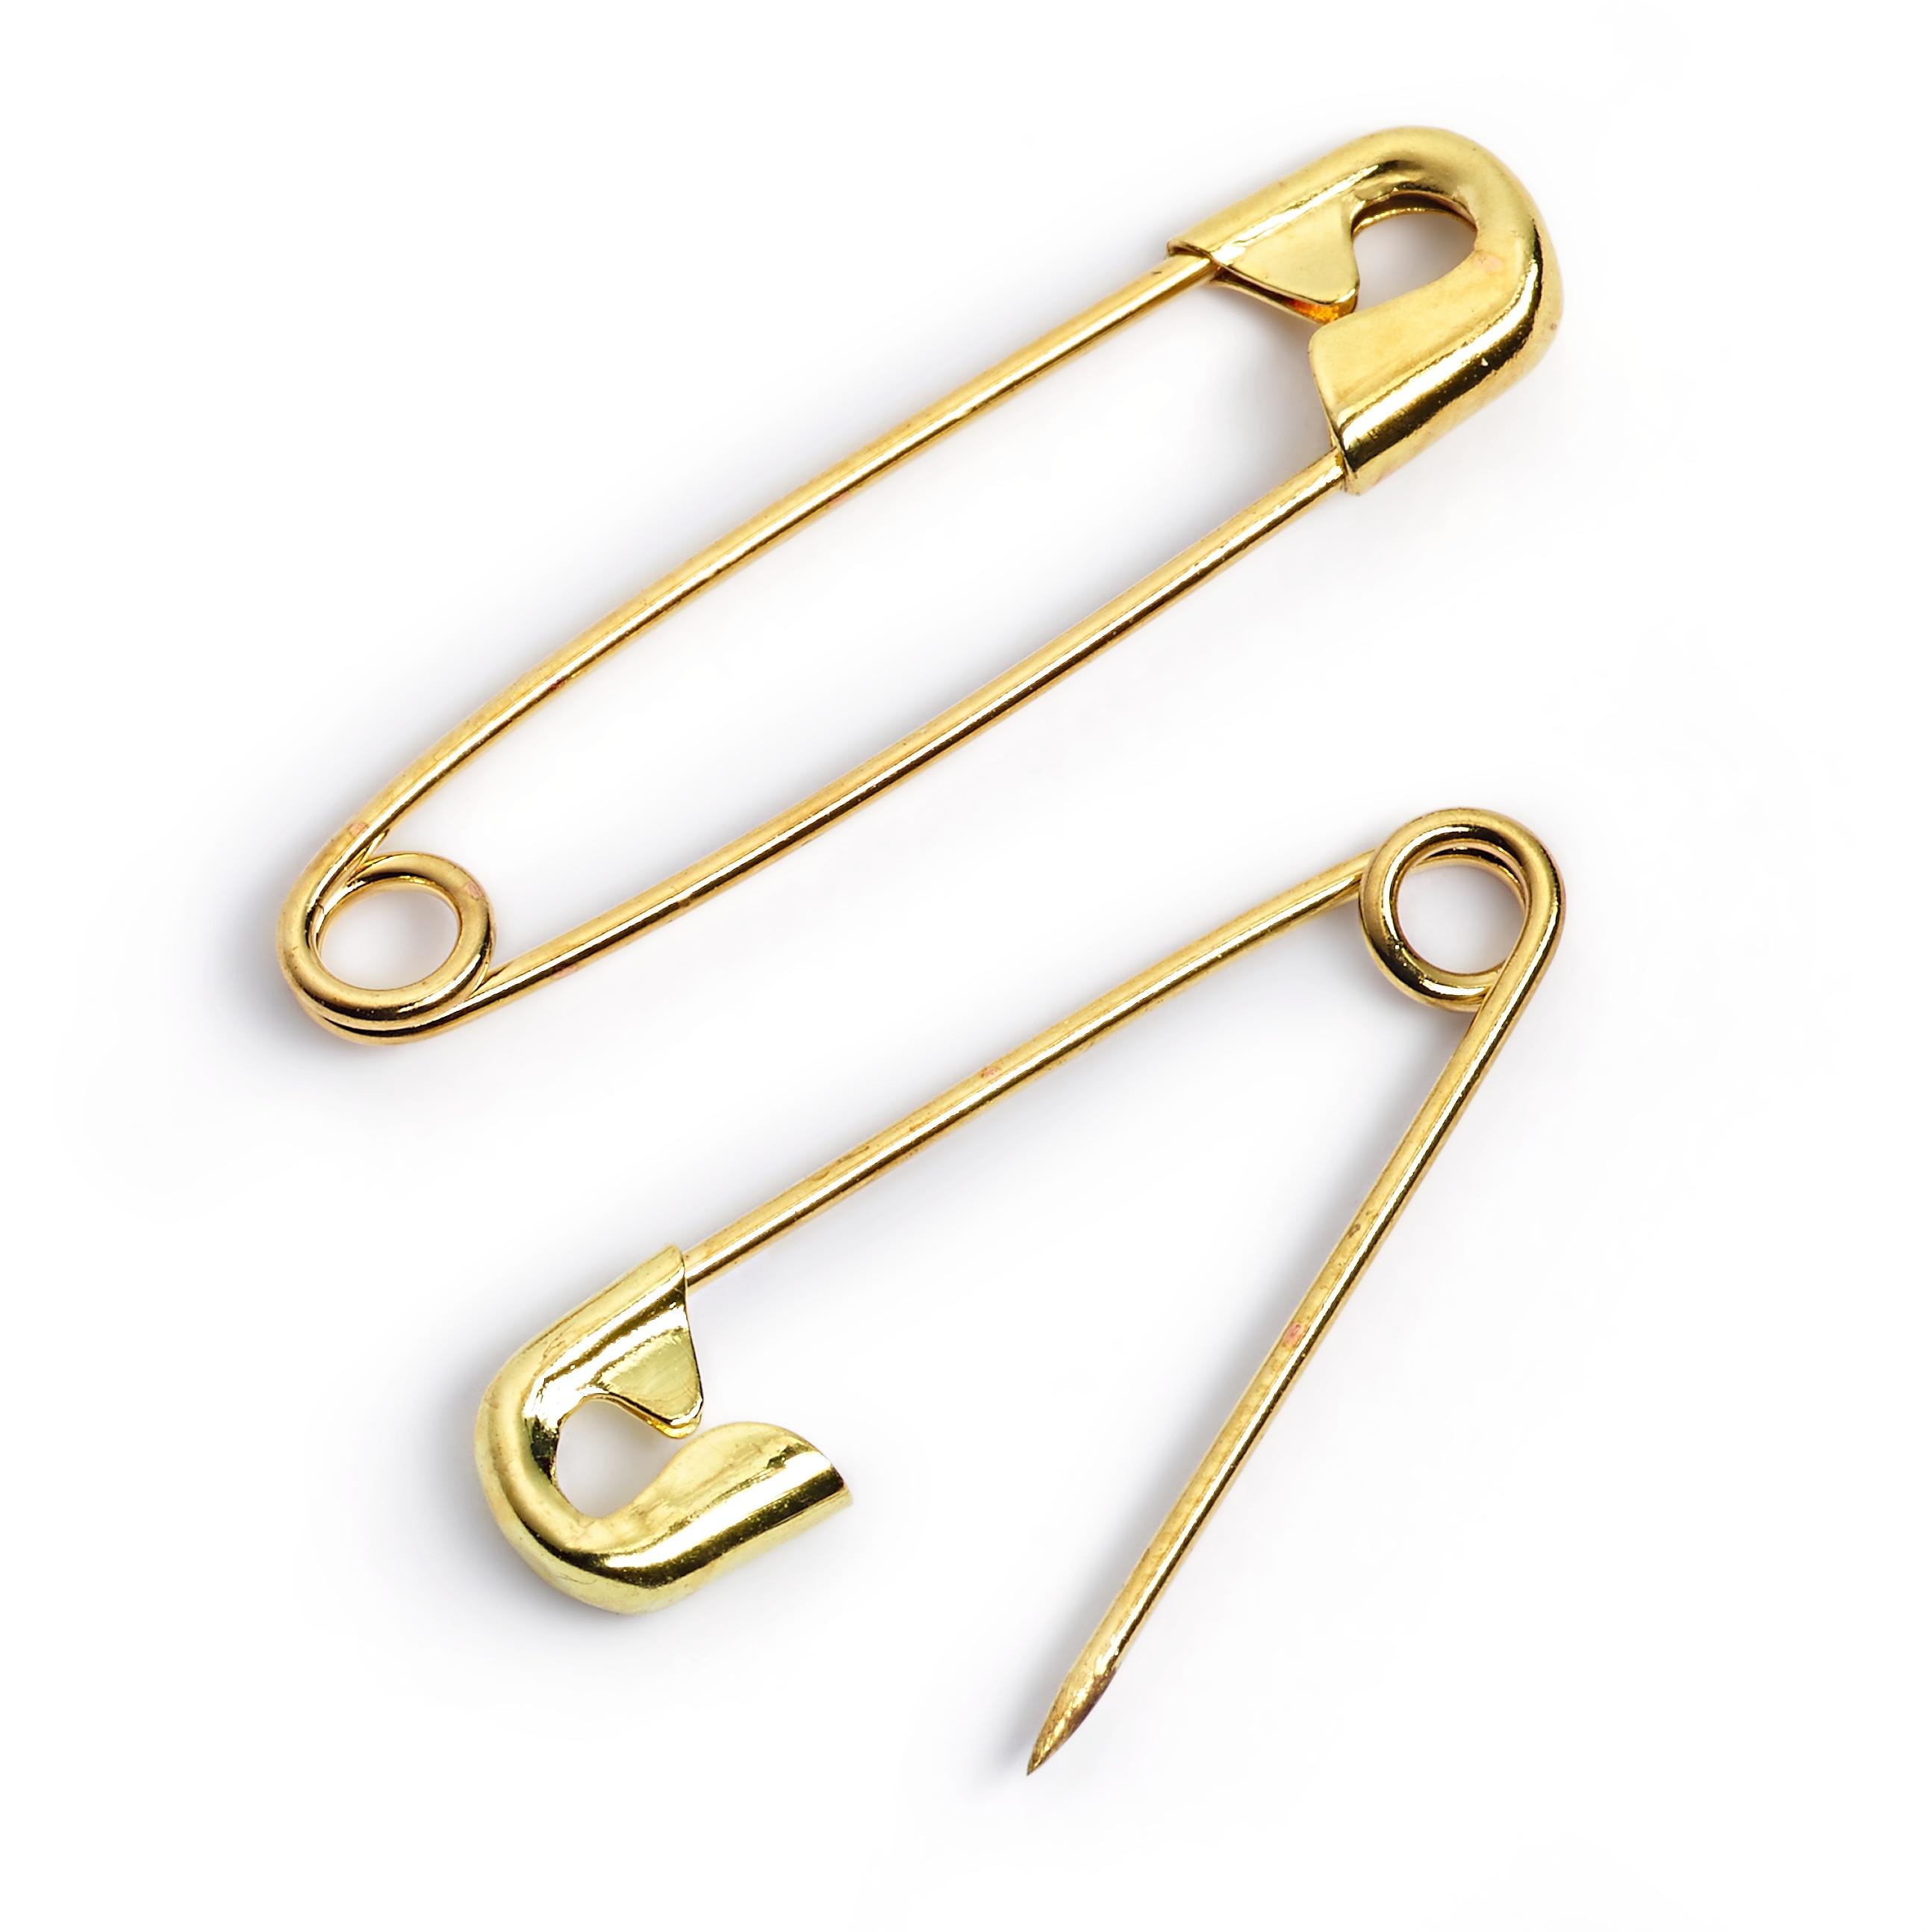 071165 Prym Brass Safety Pins Assorted 192327mm